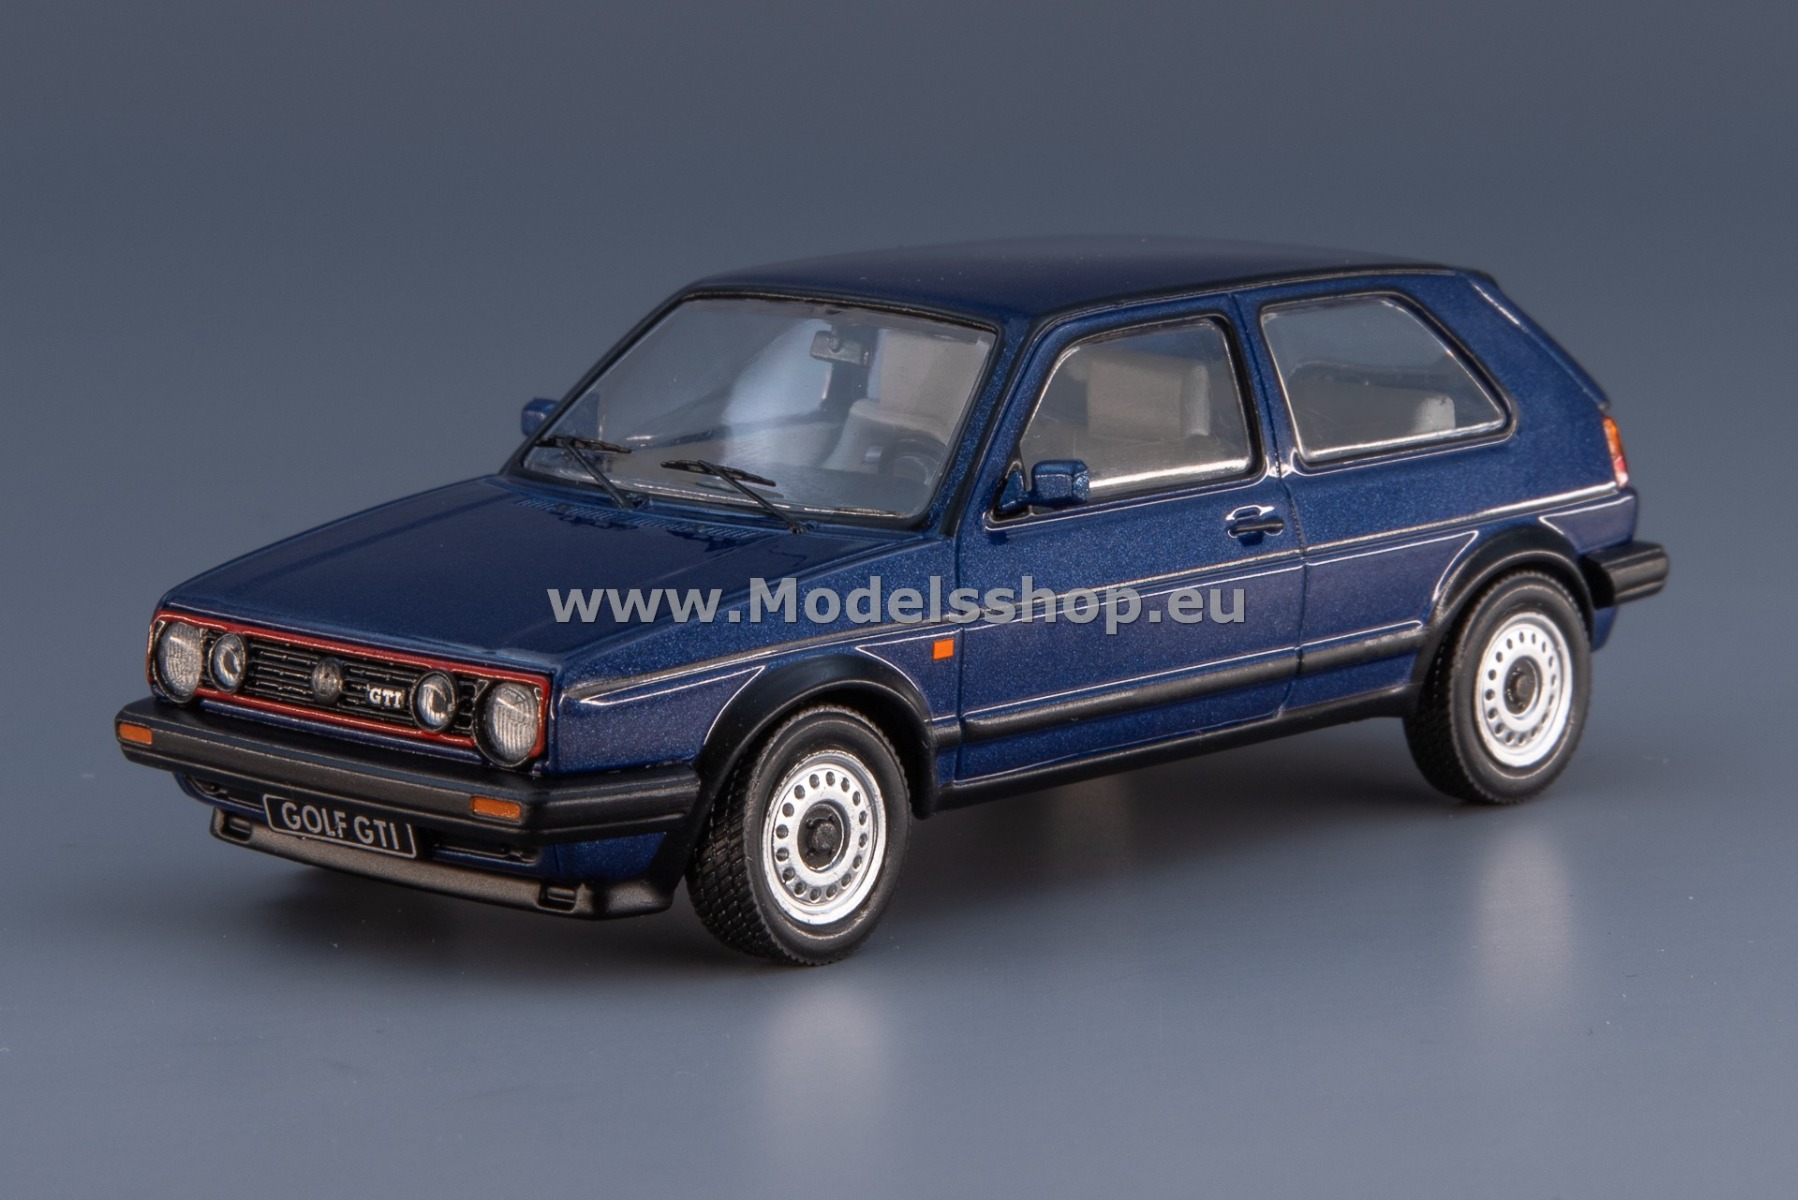 IXO CLC499N.22 Volkswagen Golf II GTI, 1984 /blue - metallic/